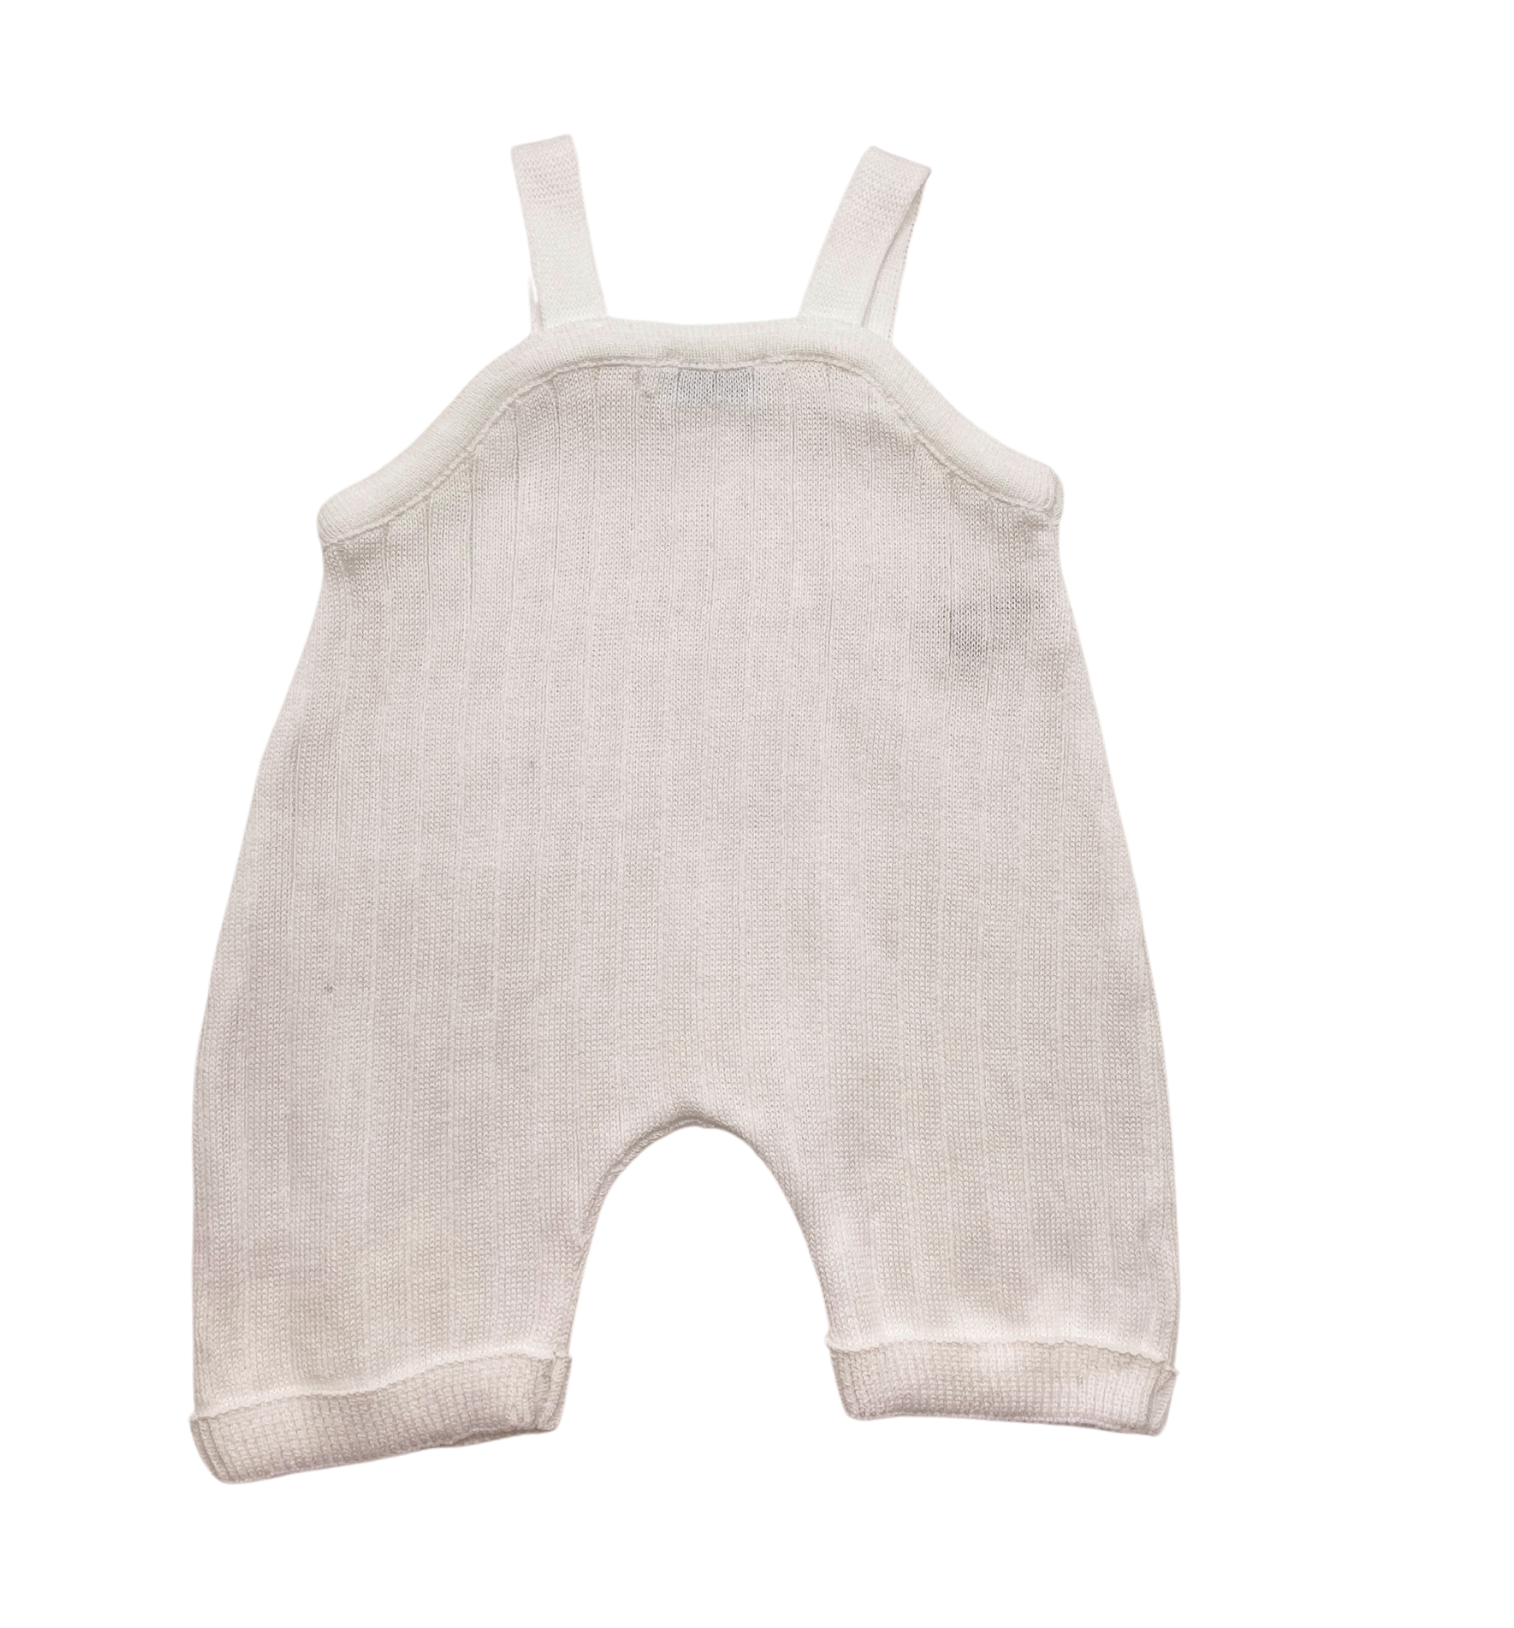 FRILO - Bib shorts - Newborn (50)